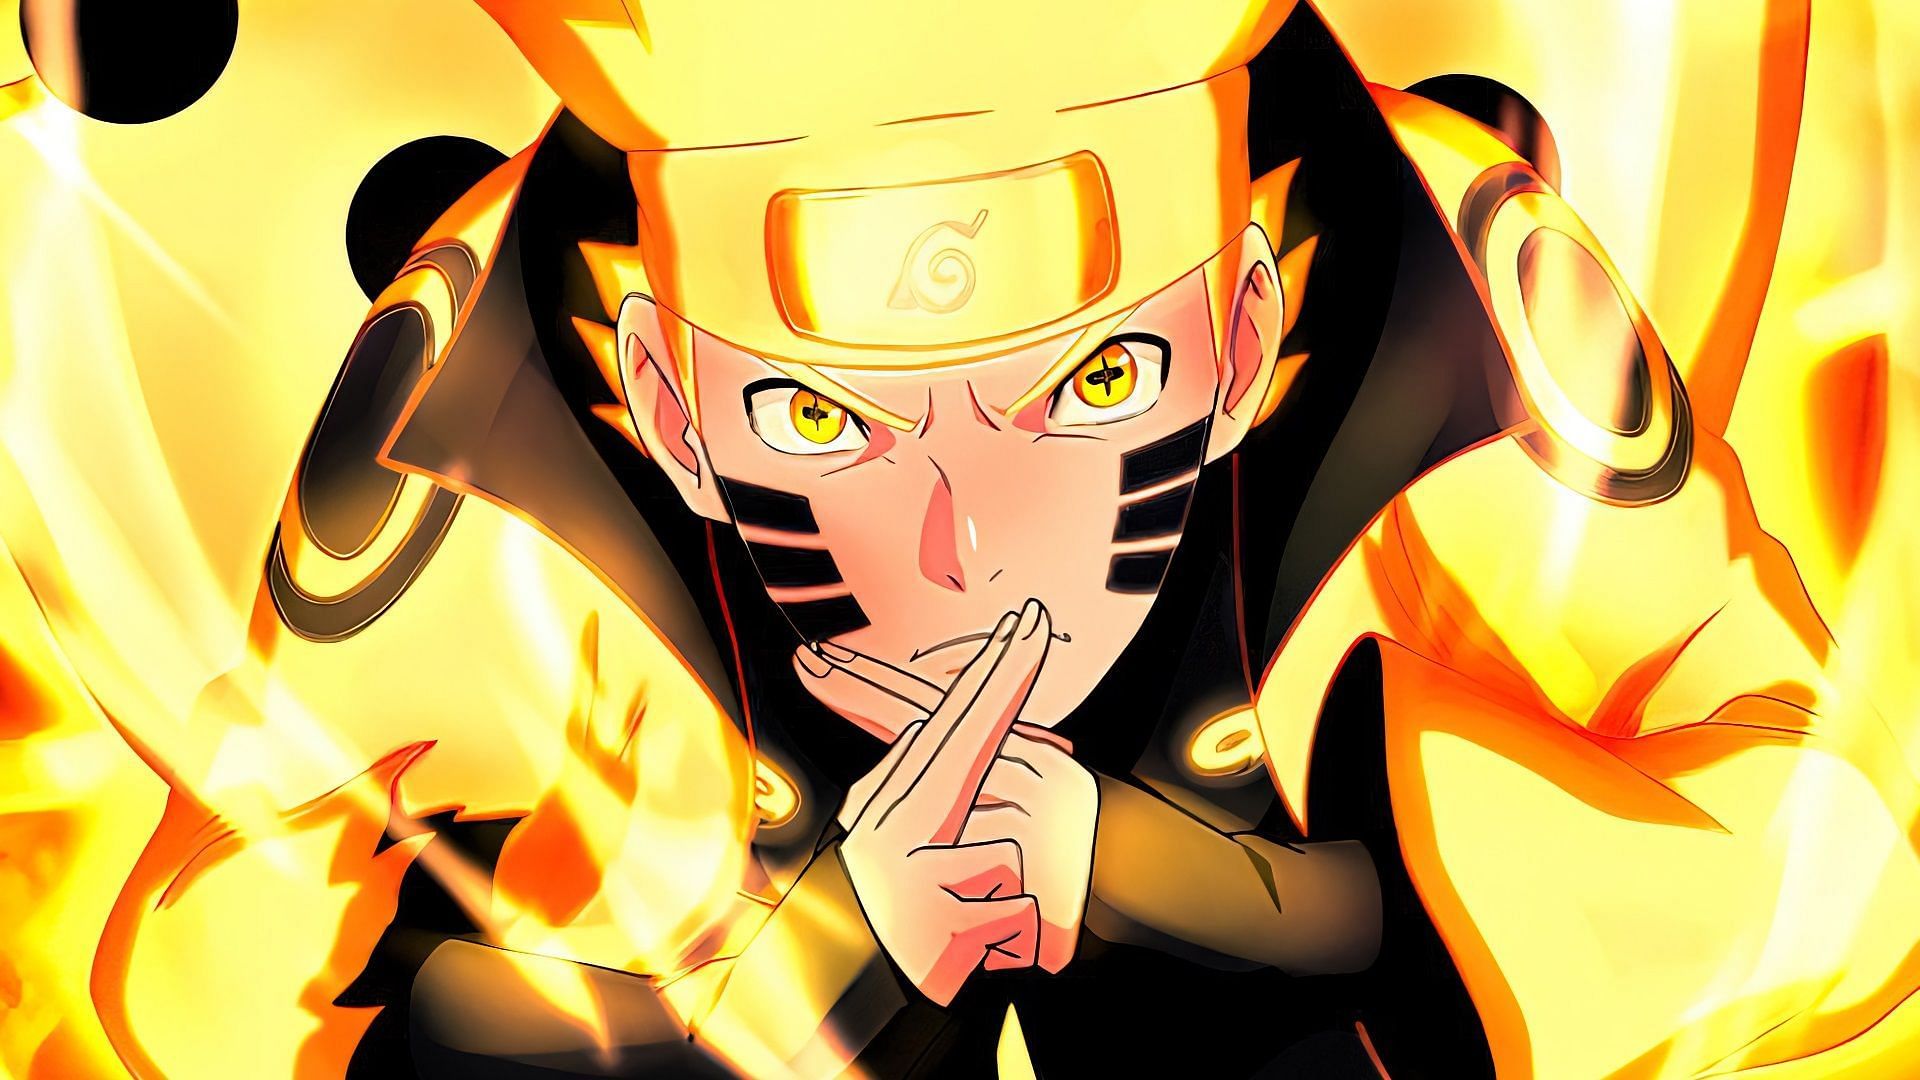 Naruto Uzumaki (Image via Studio Pierrot, Naruto)